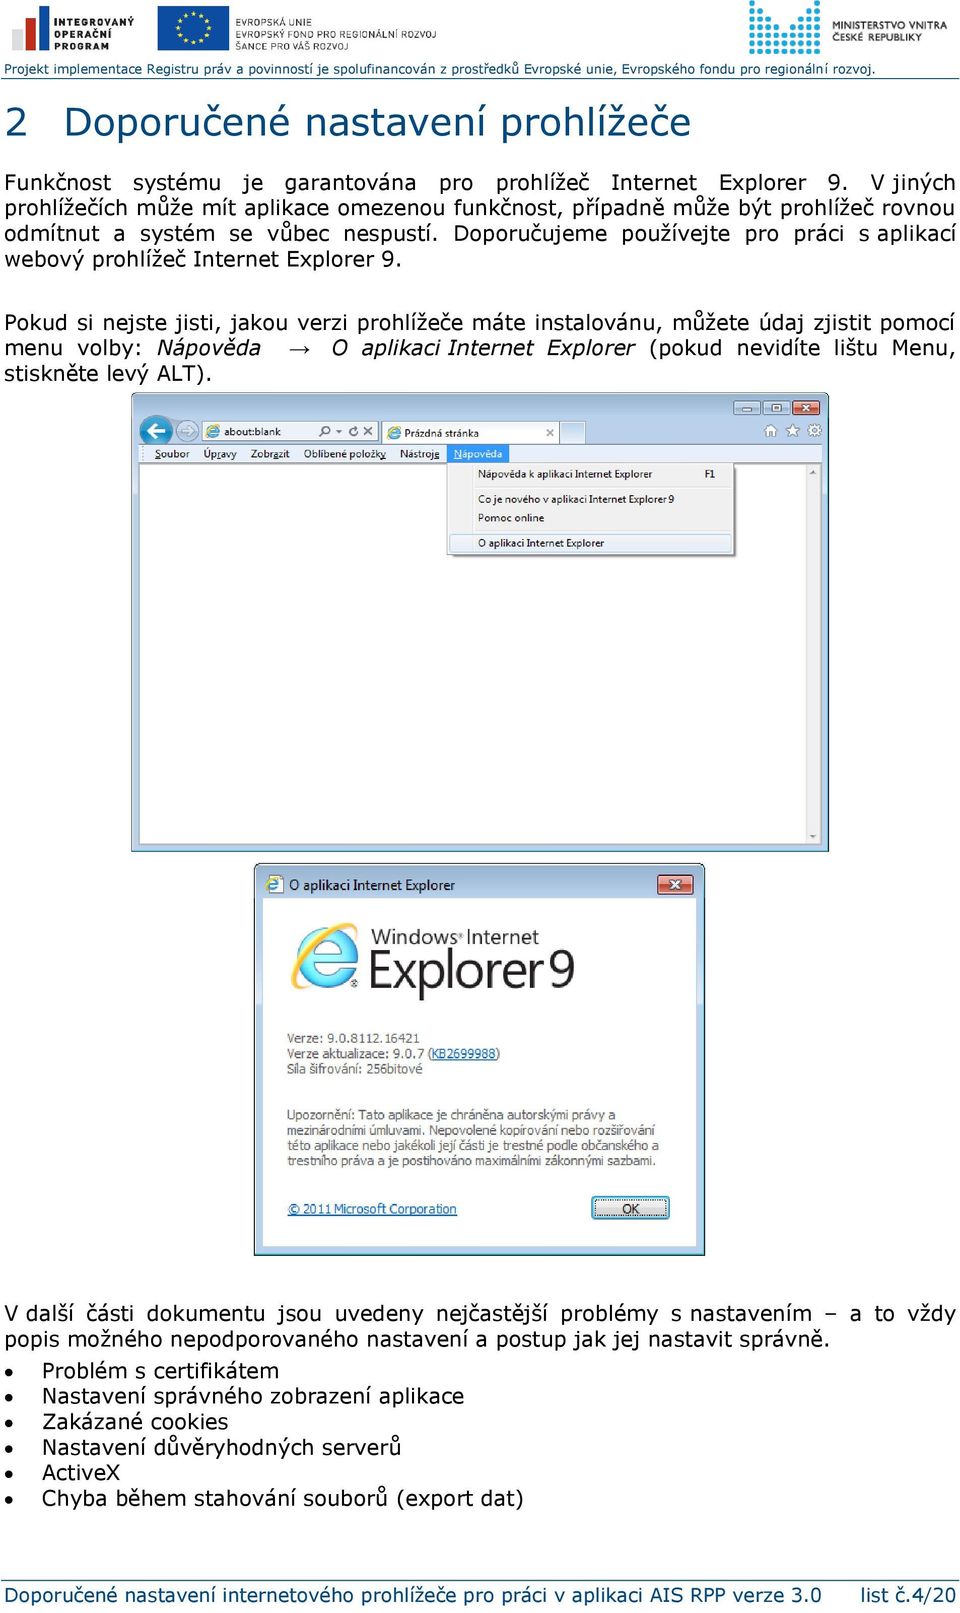 Doporučujeme používejte pro práci s aplikací webový prohlížeč Internet Explorer 9.